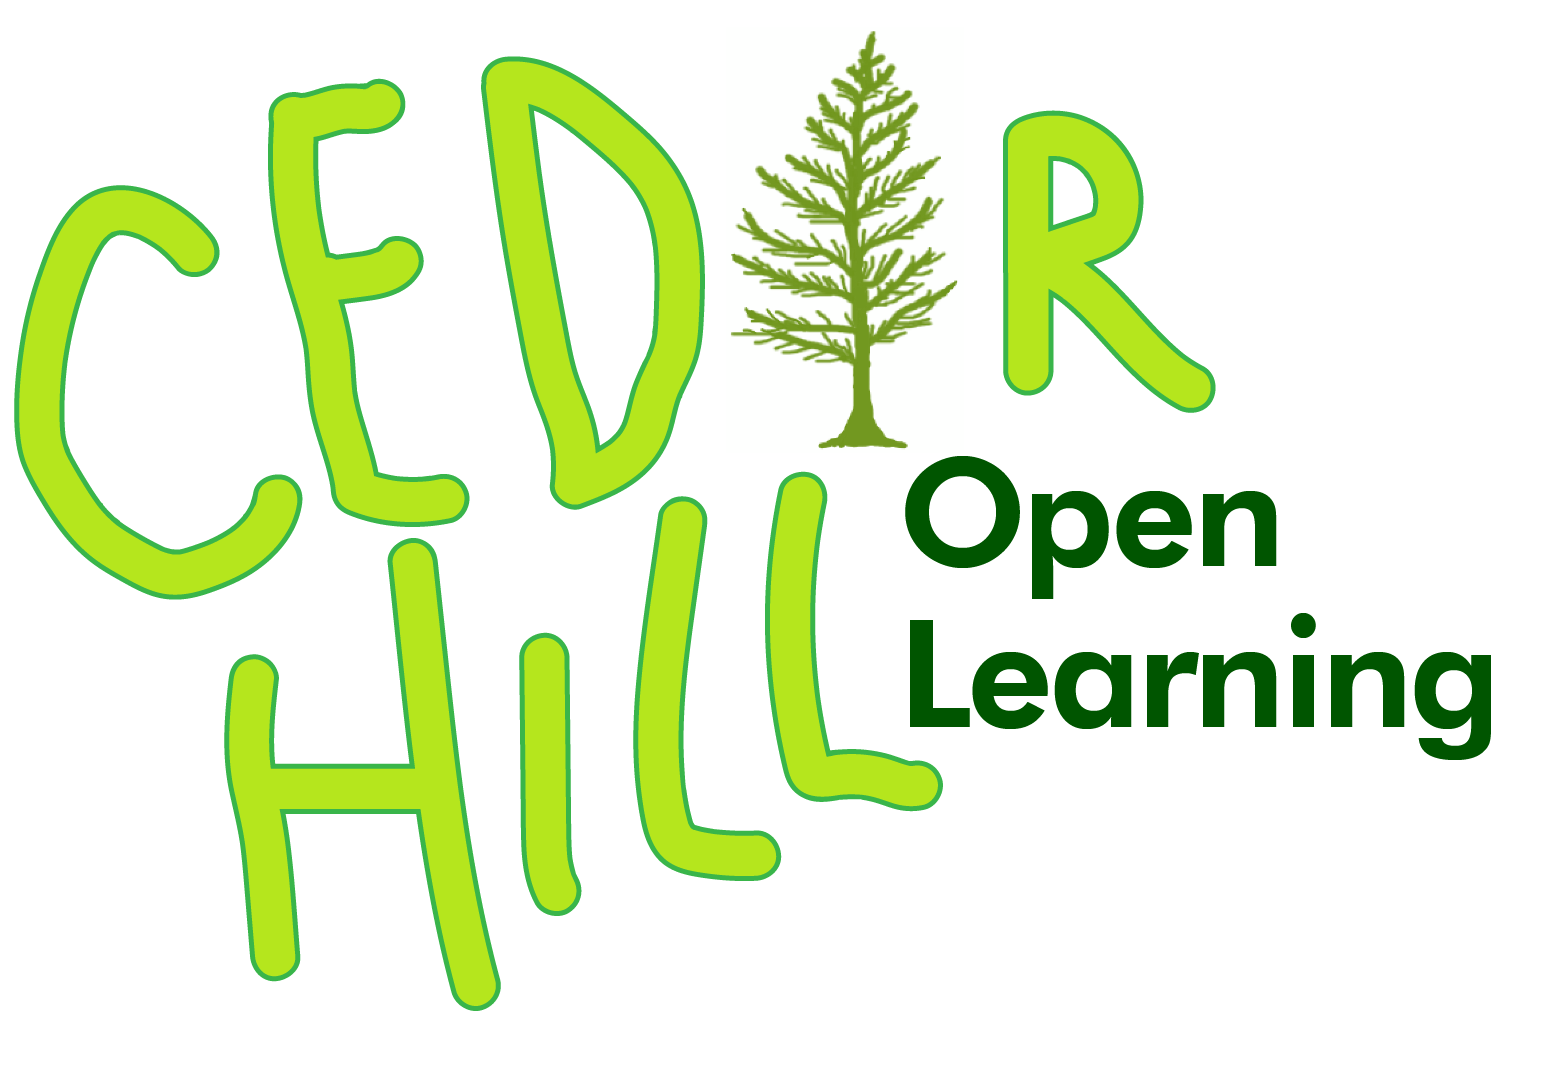 Cedar Hill Open Learning